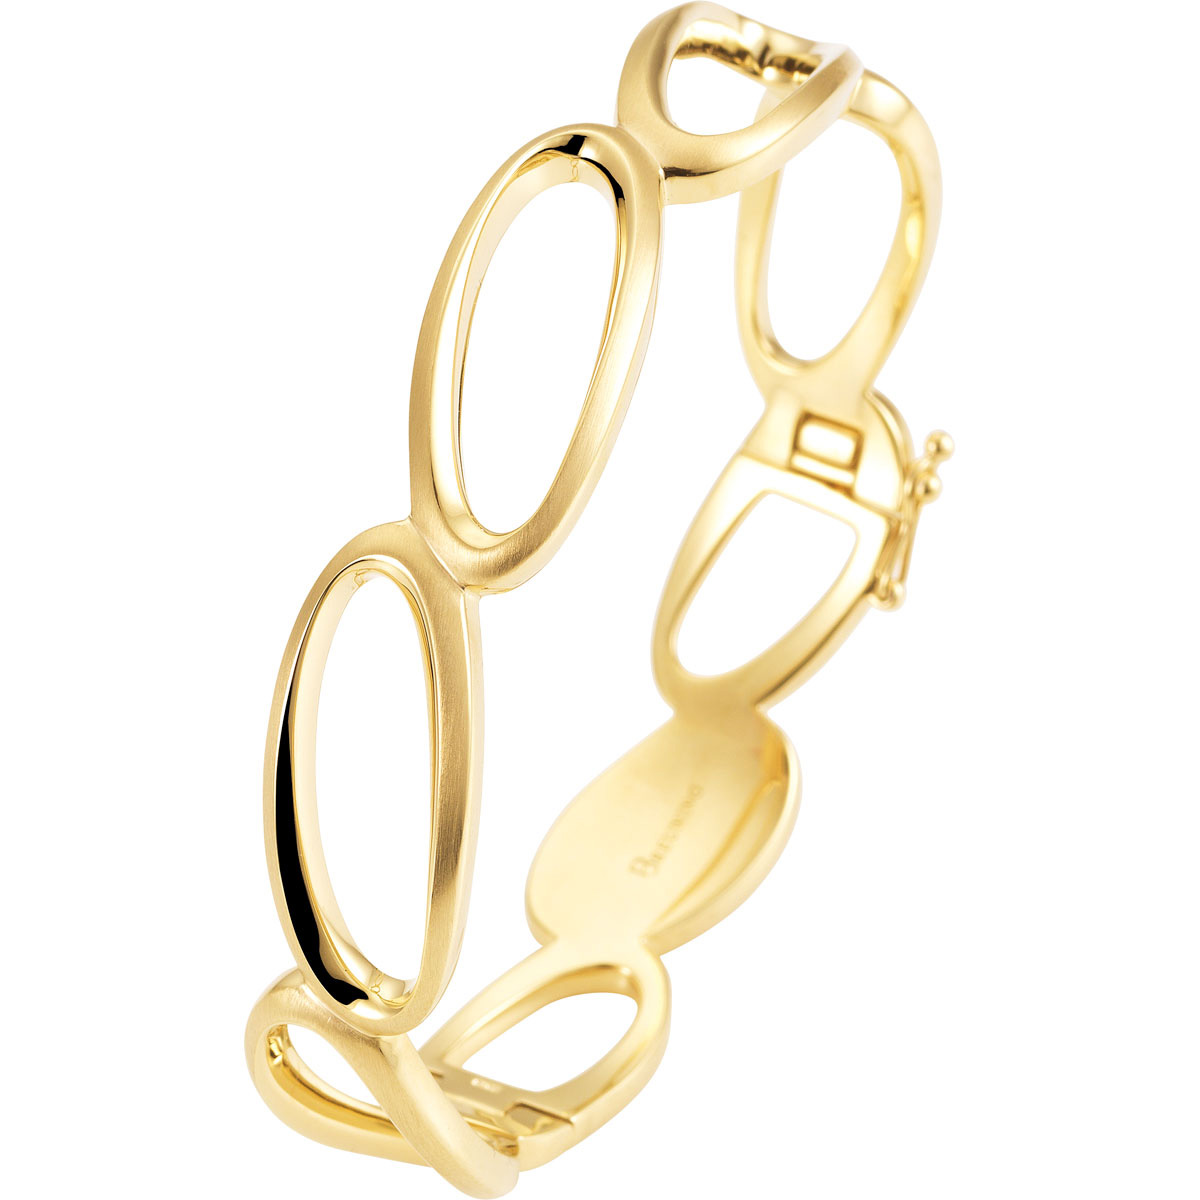 Grosir 18k Kuning OEM/ODM Perhiasan Gelang Perak Sterling Berlapis Emas perhiasan produsen grosir yang disesuaikan